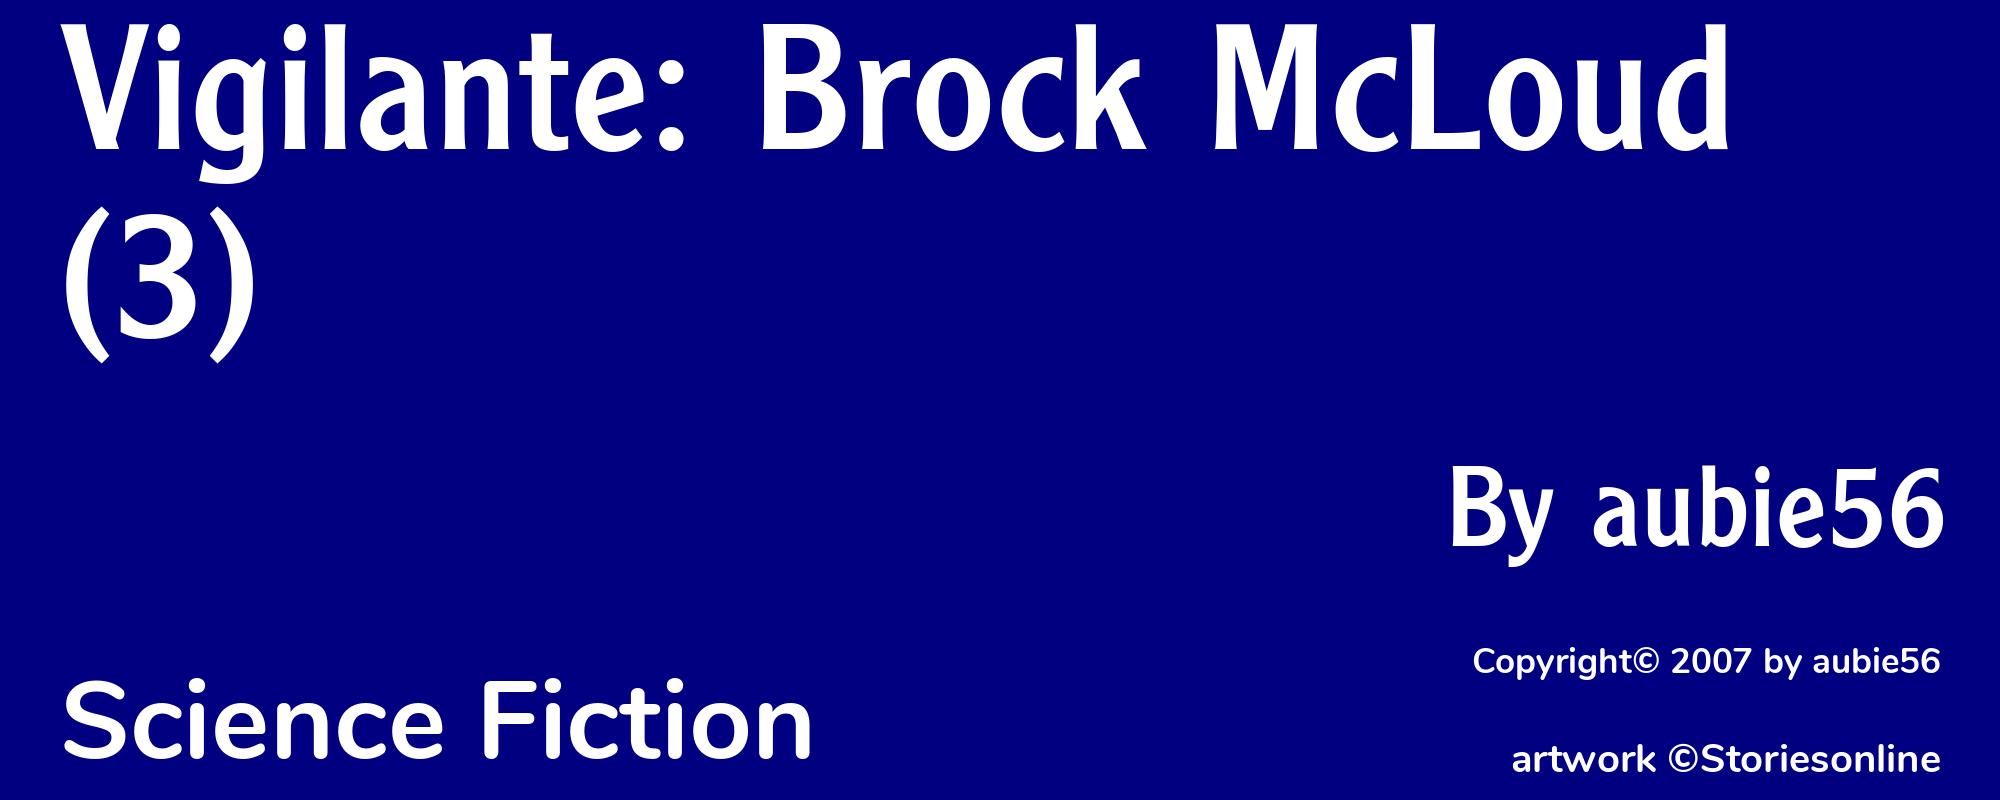 Vigilante: Brock McLoud(3) - Cover